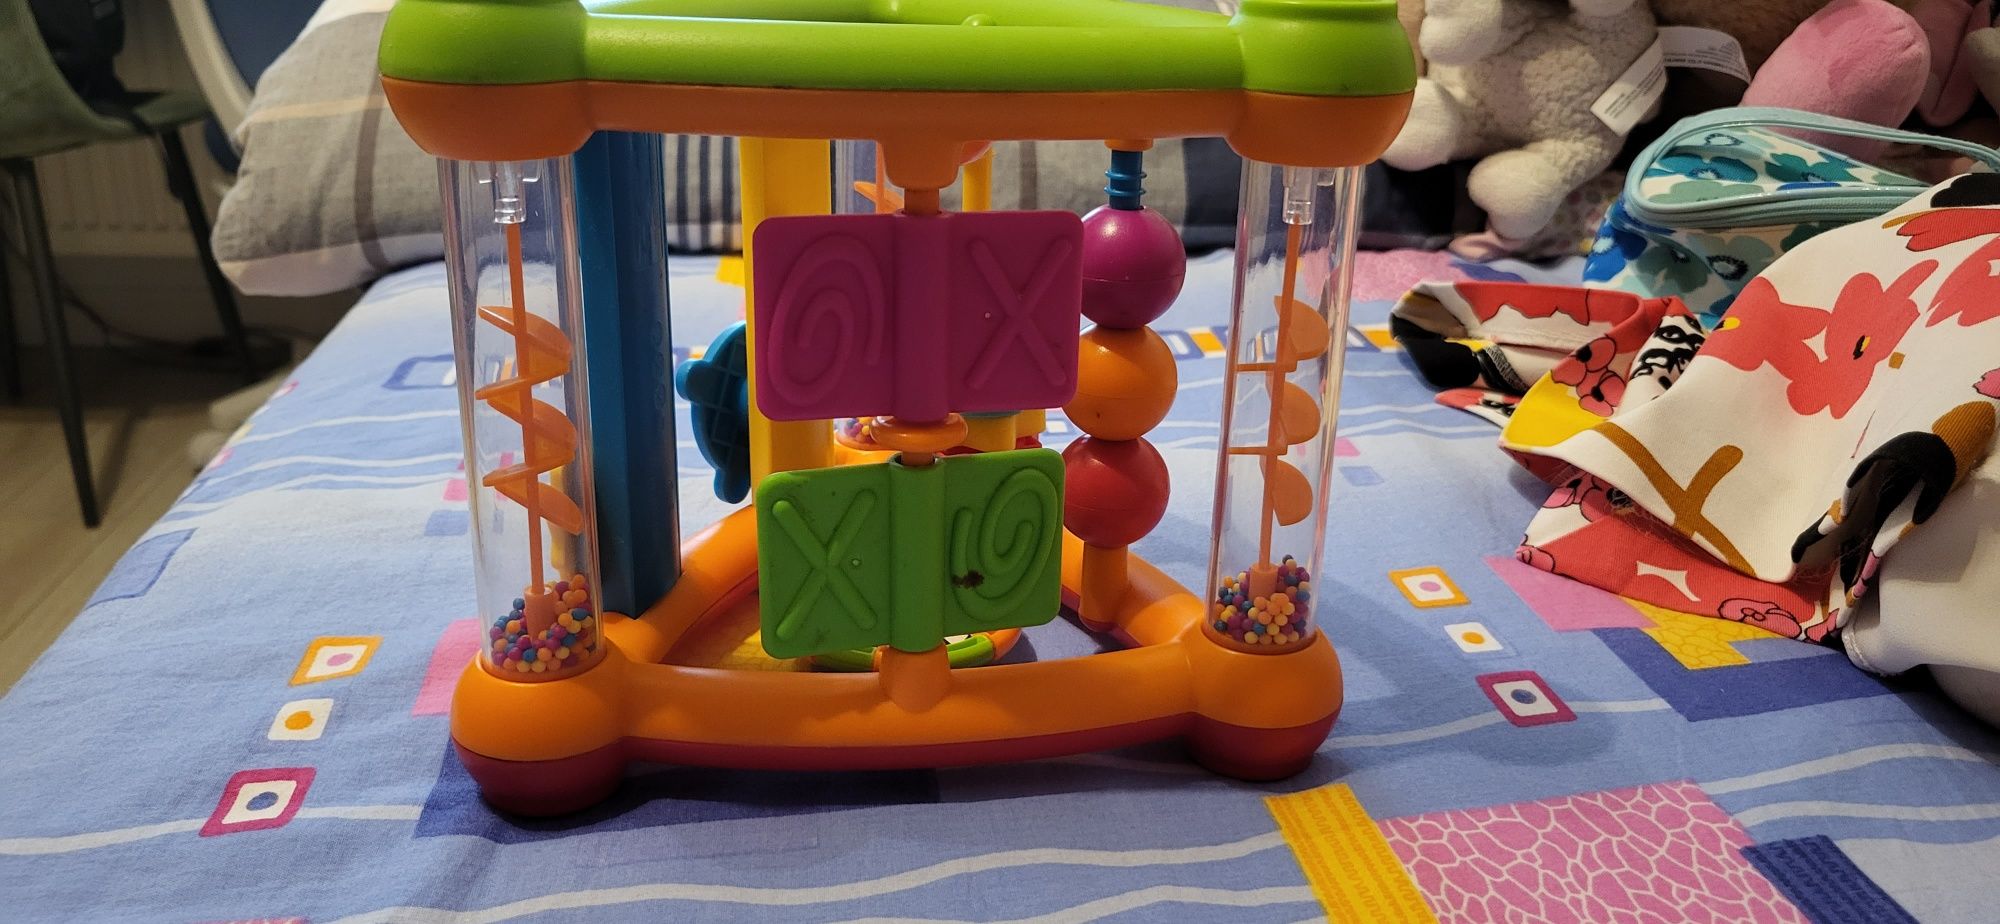 Centru activitati colorat - jucarie multifunctionala bebe